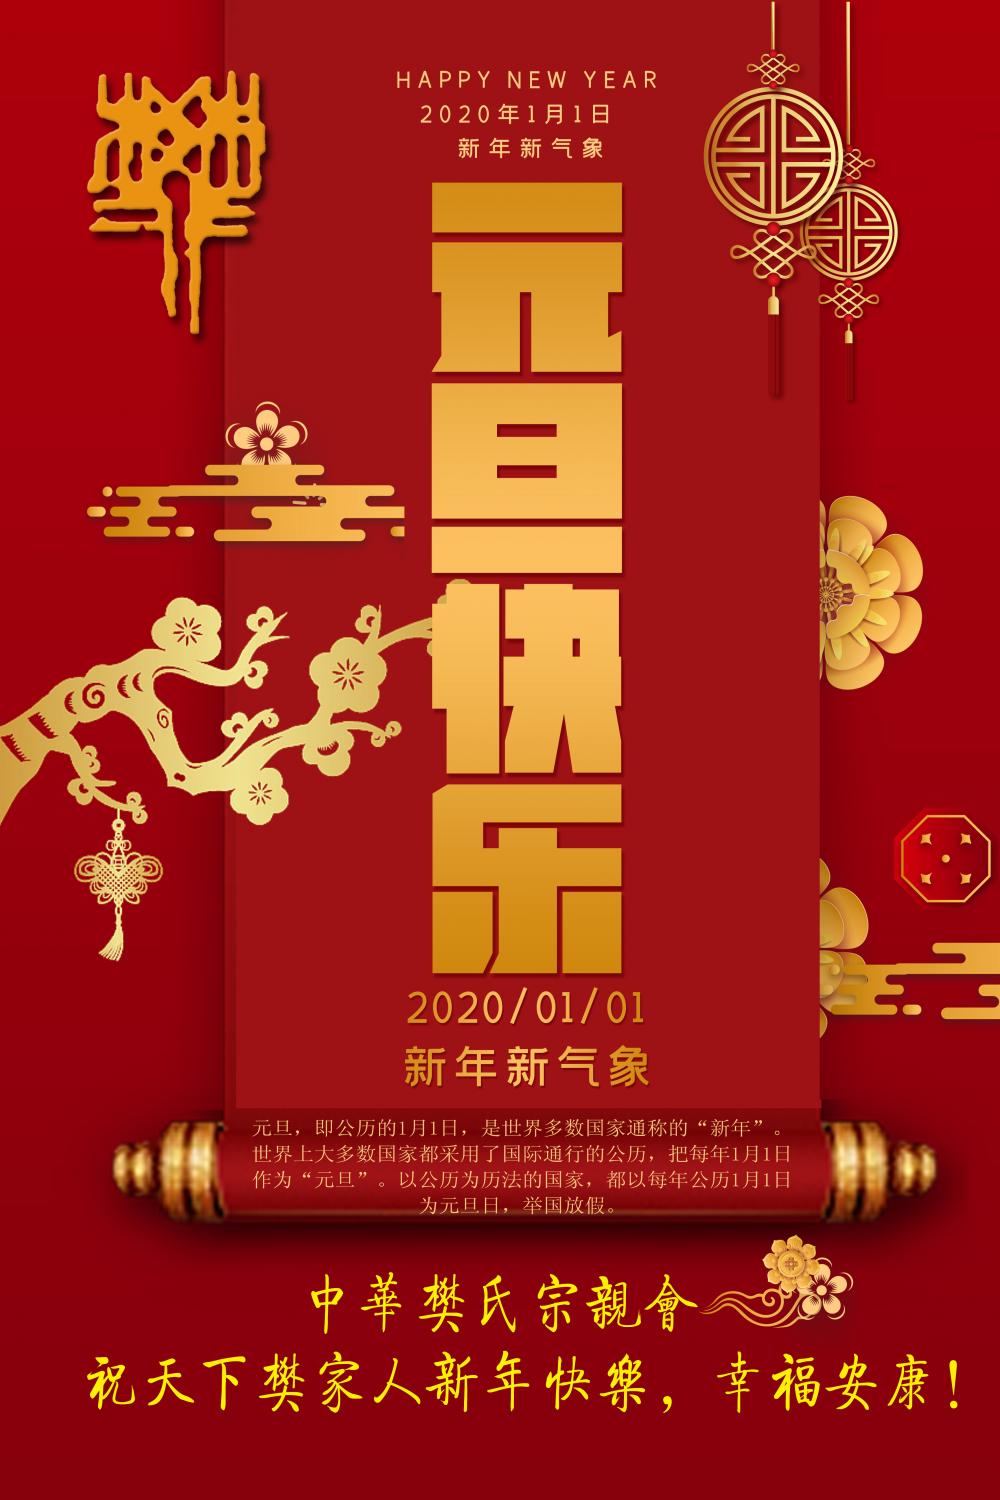 中华樊氏宗亲会祝天下樊家人2020年元旦快乐，幸福安康！